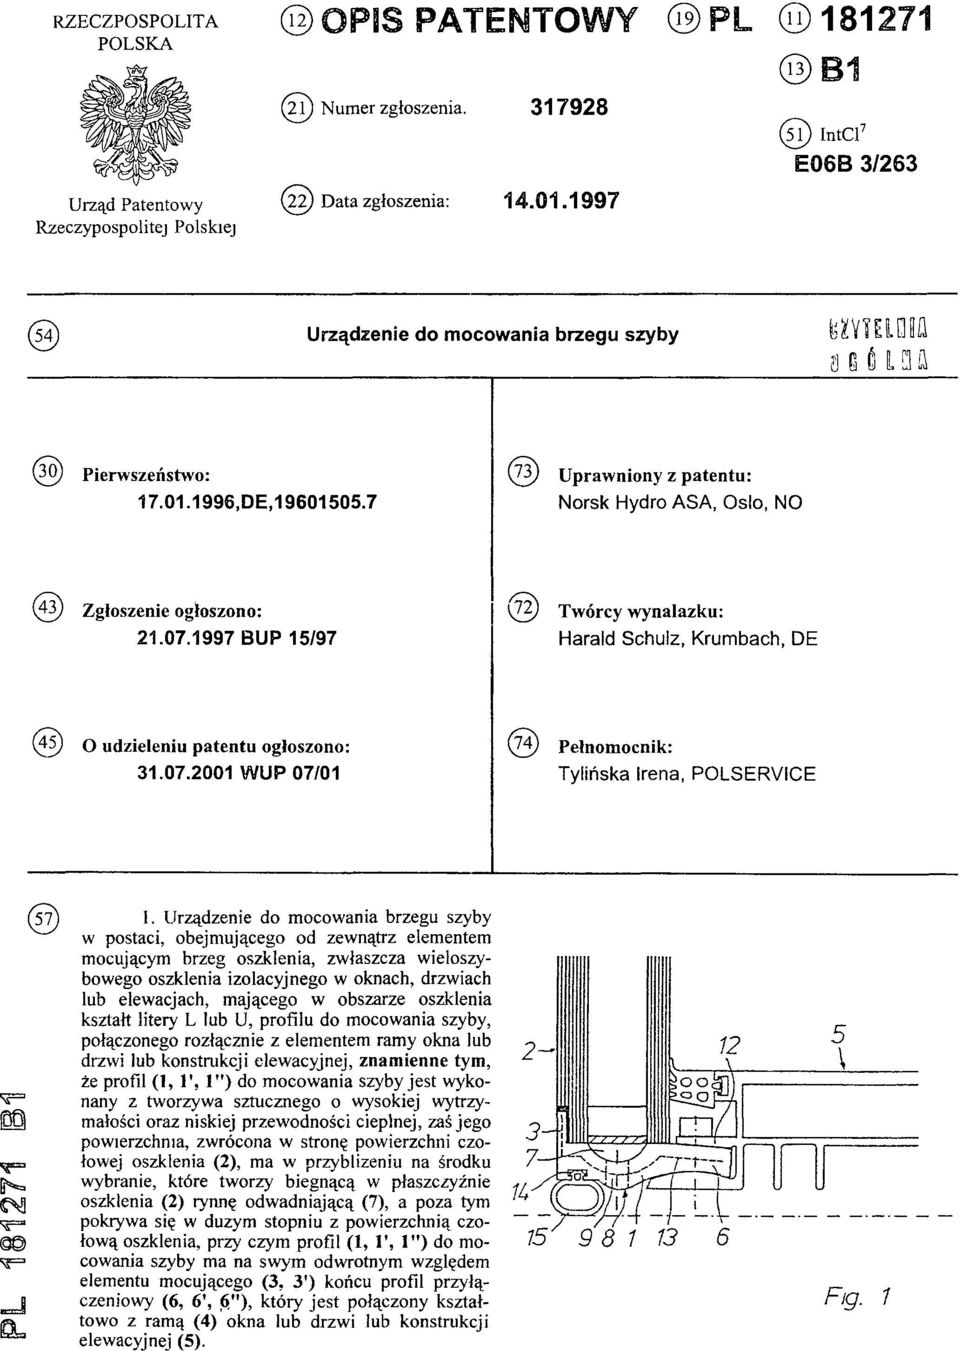 7 (73) Uprawniony z patentu: Norsk Hydro ASA, Oslo, NO (43) Zgłoszenie ogłoszono: 21.07.1997 BUP 15/97 (72) Twórcy wynalazku: Harald Schulz, Krumbach, DE (45) O udzieleniu patentu ogłoszono: 31.07.2001 WUP 07/01 (74) Pełnomocnik: Tylińska Irena, POLSERVICE PL 181271 B1 (57) 1.